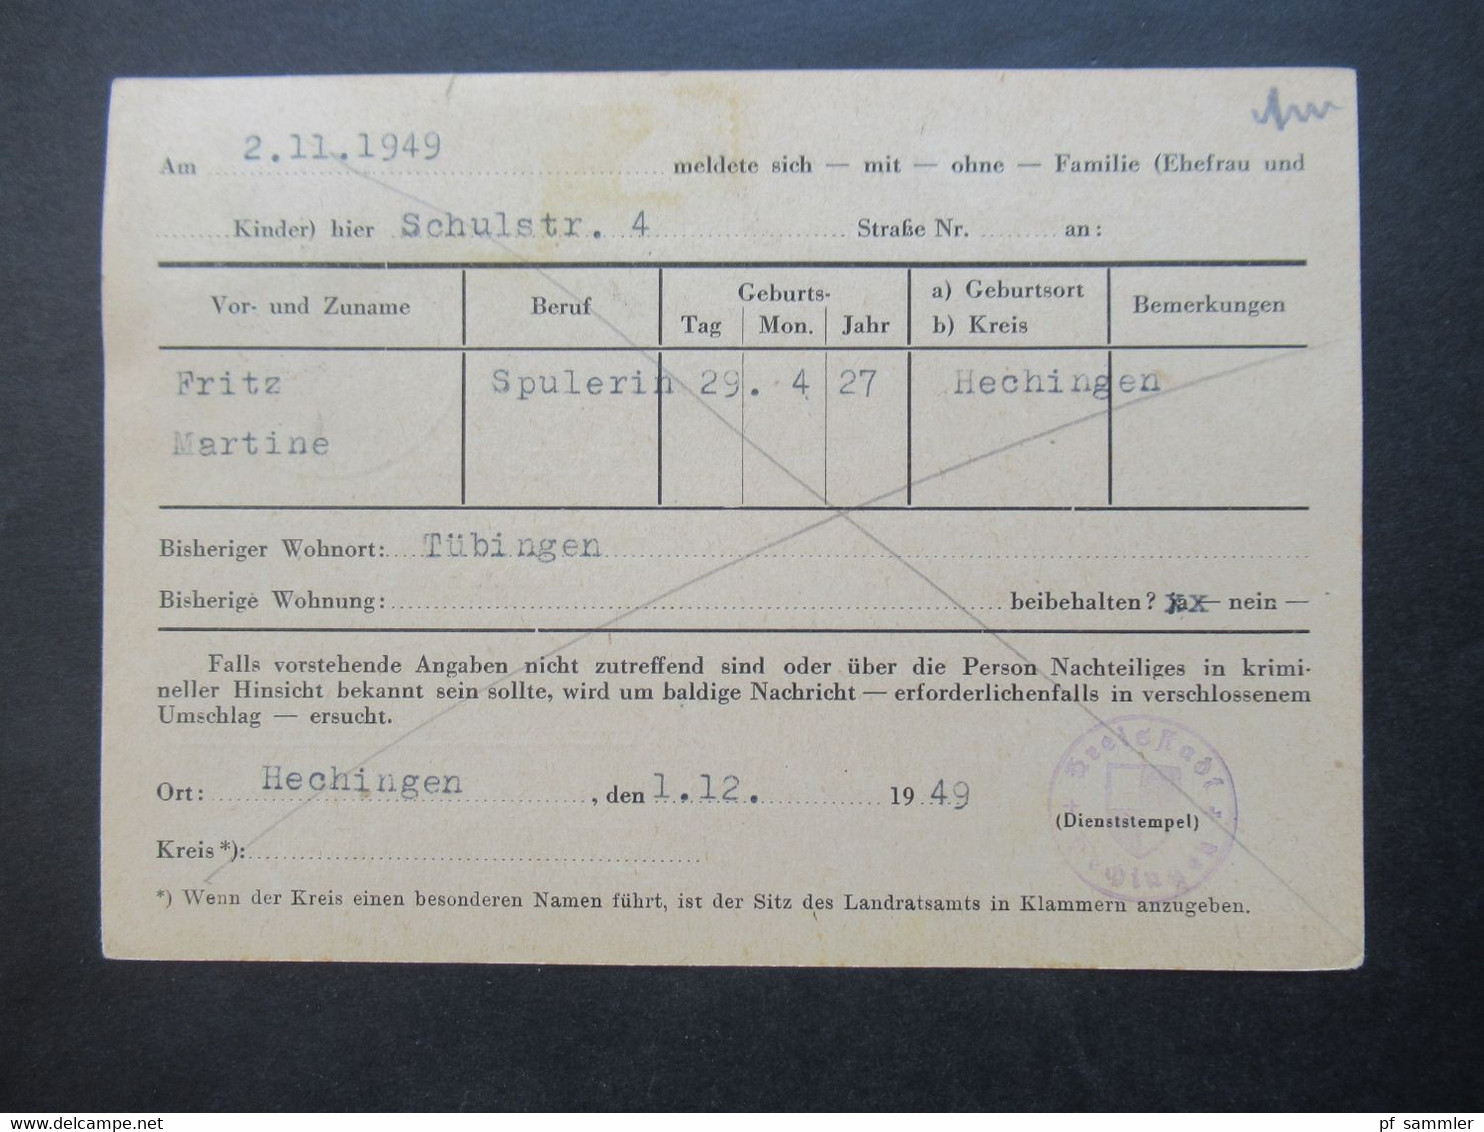 Französische Zone Württemberg 3.12.1949 PK Mit Wohnungsbau-Abgabe Nr.3 Nachrichtenaustausch Der Meldebehörden - Württemberg